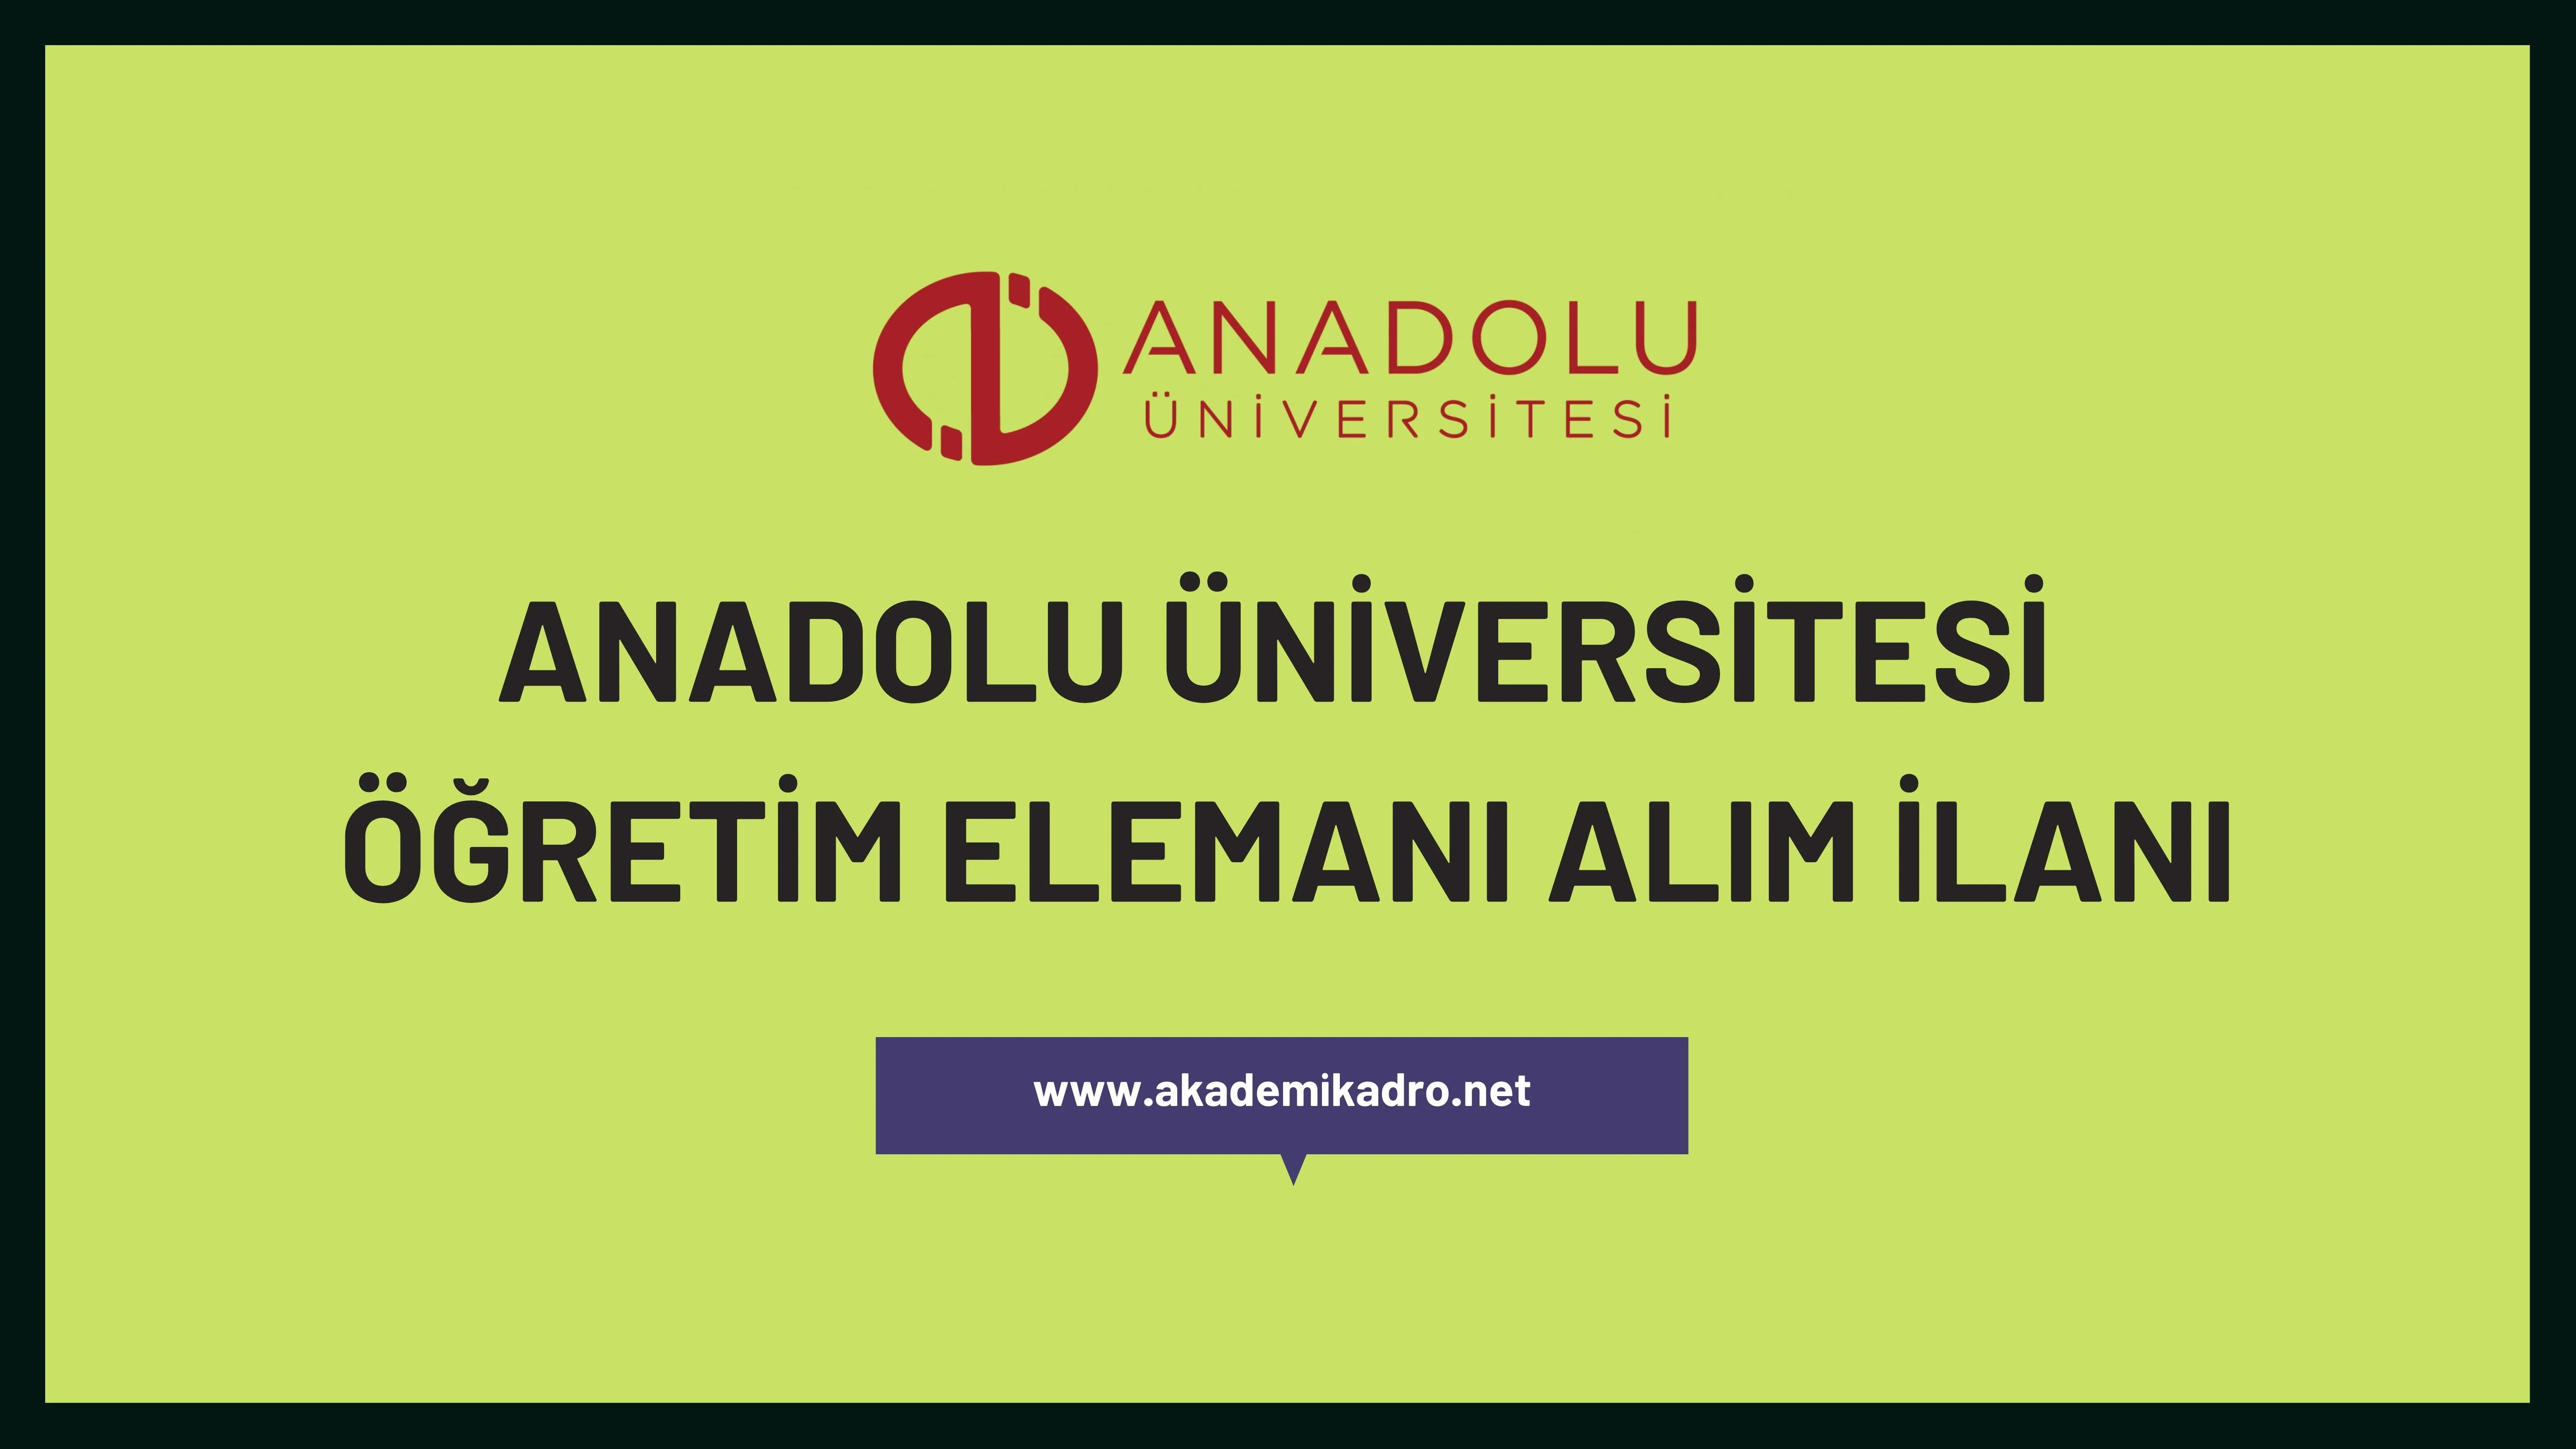 Anadolu Üniversitesi 16 Araştırma Görevlisi ve 4 öğretim görevlisi alacaktır. Son başvuru tarihi 14 Aralık 2023.